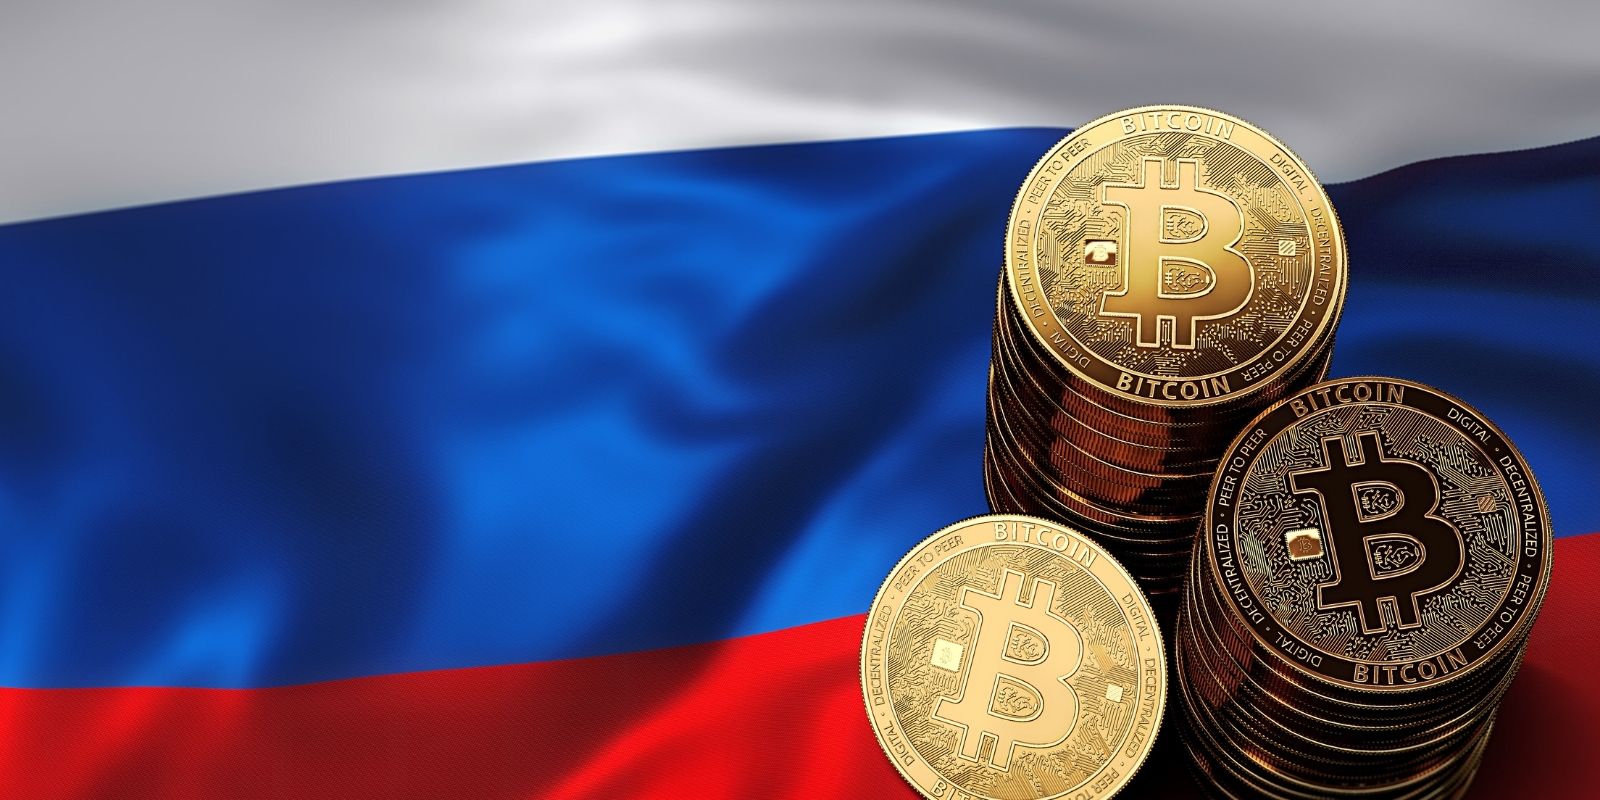 La Russie va interdire le minage et l'utilisation de crypto-monnaie